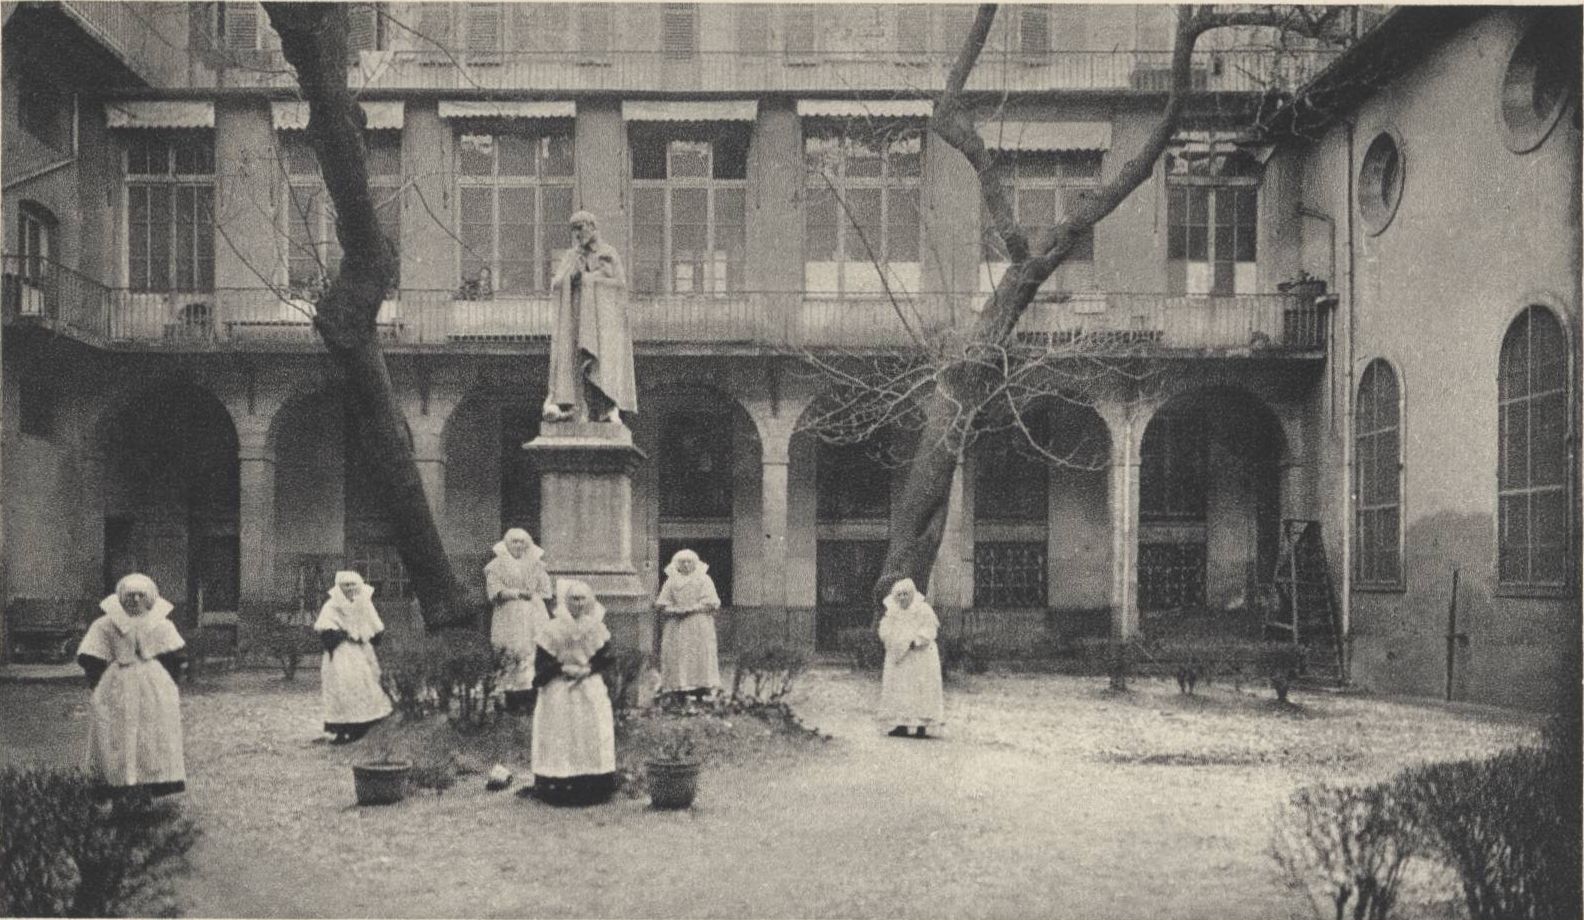 Lyon - Ancien hôpital de la Charité, cour Saint-Vincent de Paul : carte postale NB (vers 1910, cote : 4FI/1039)